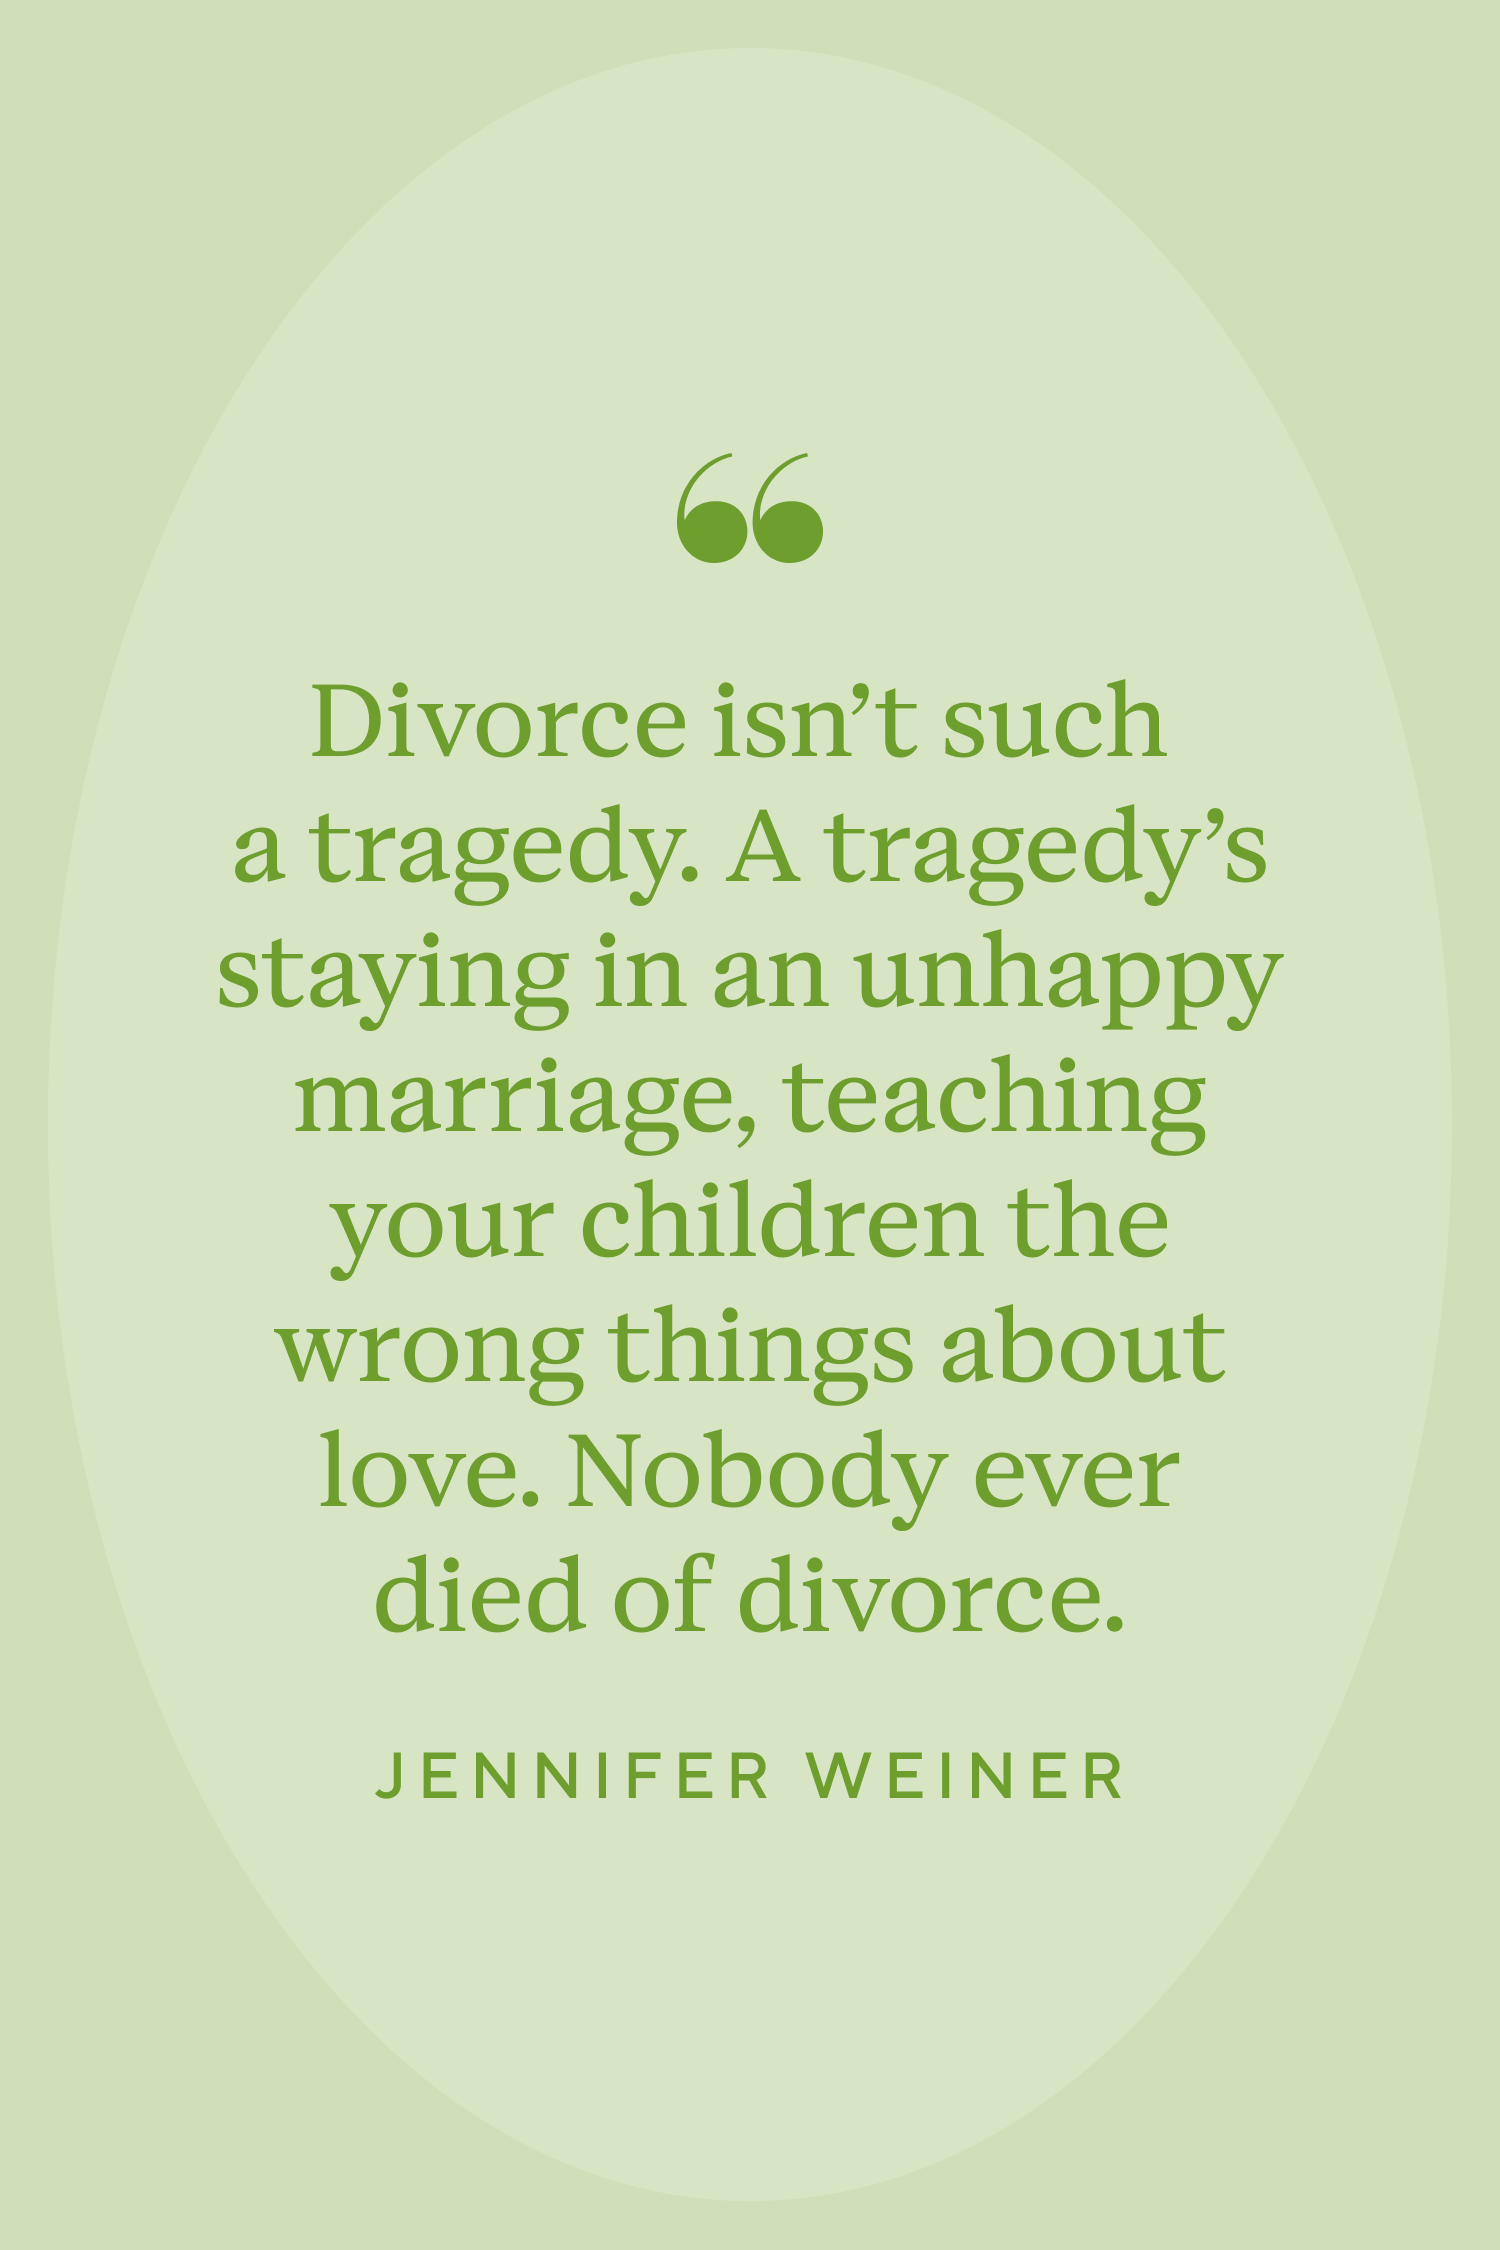 divorce children quotes